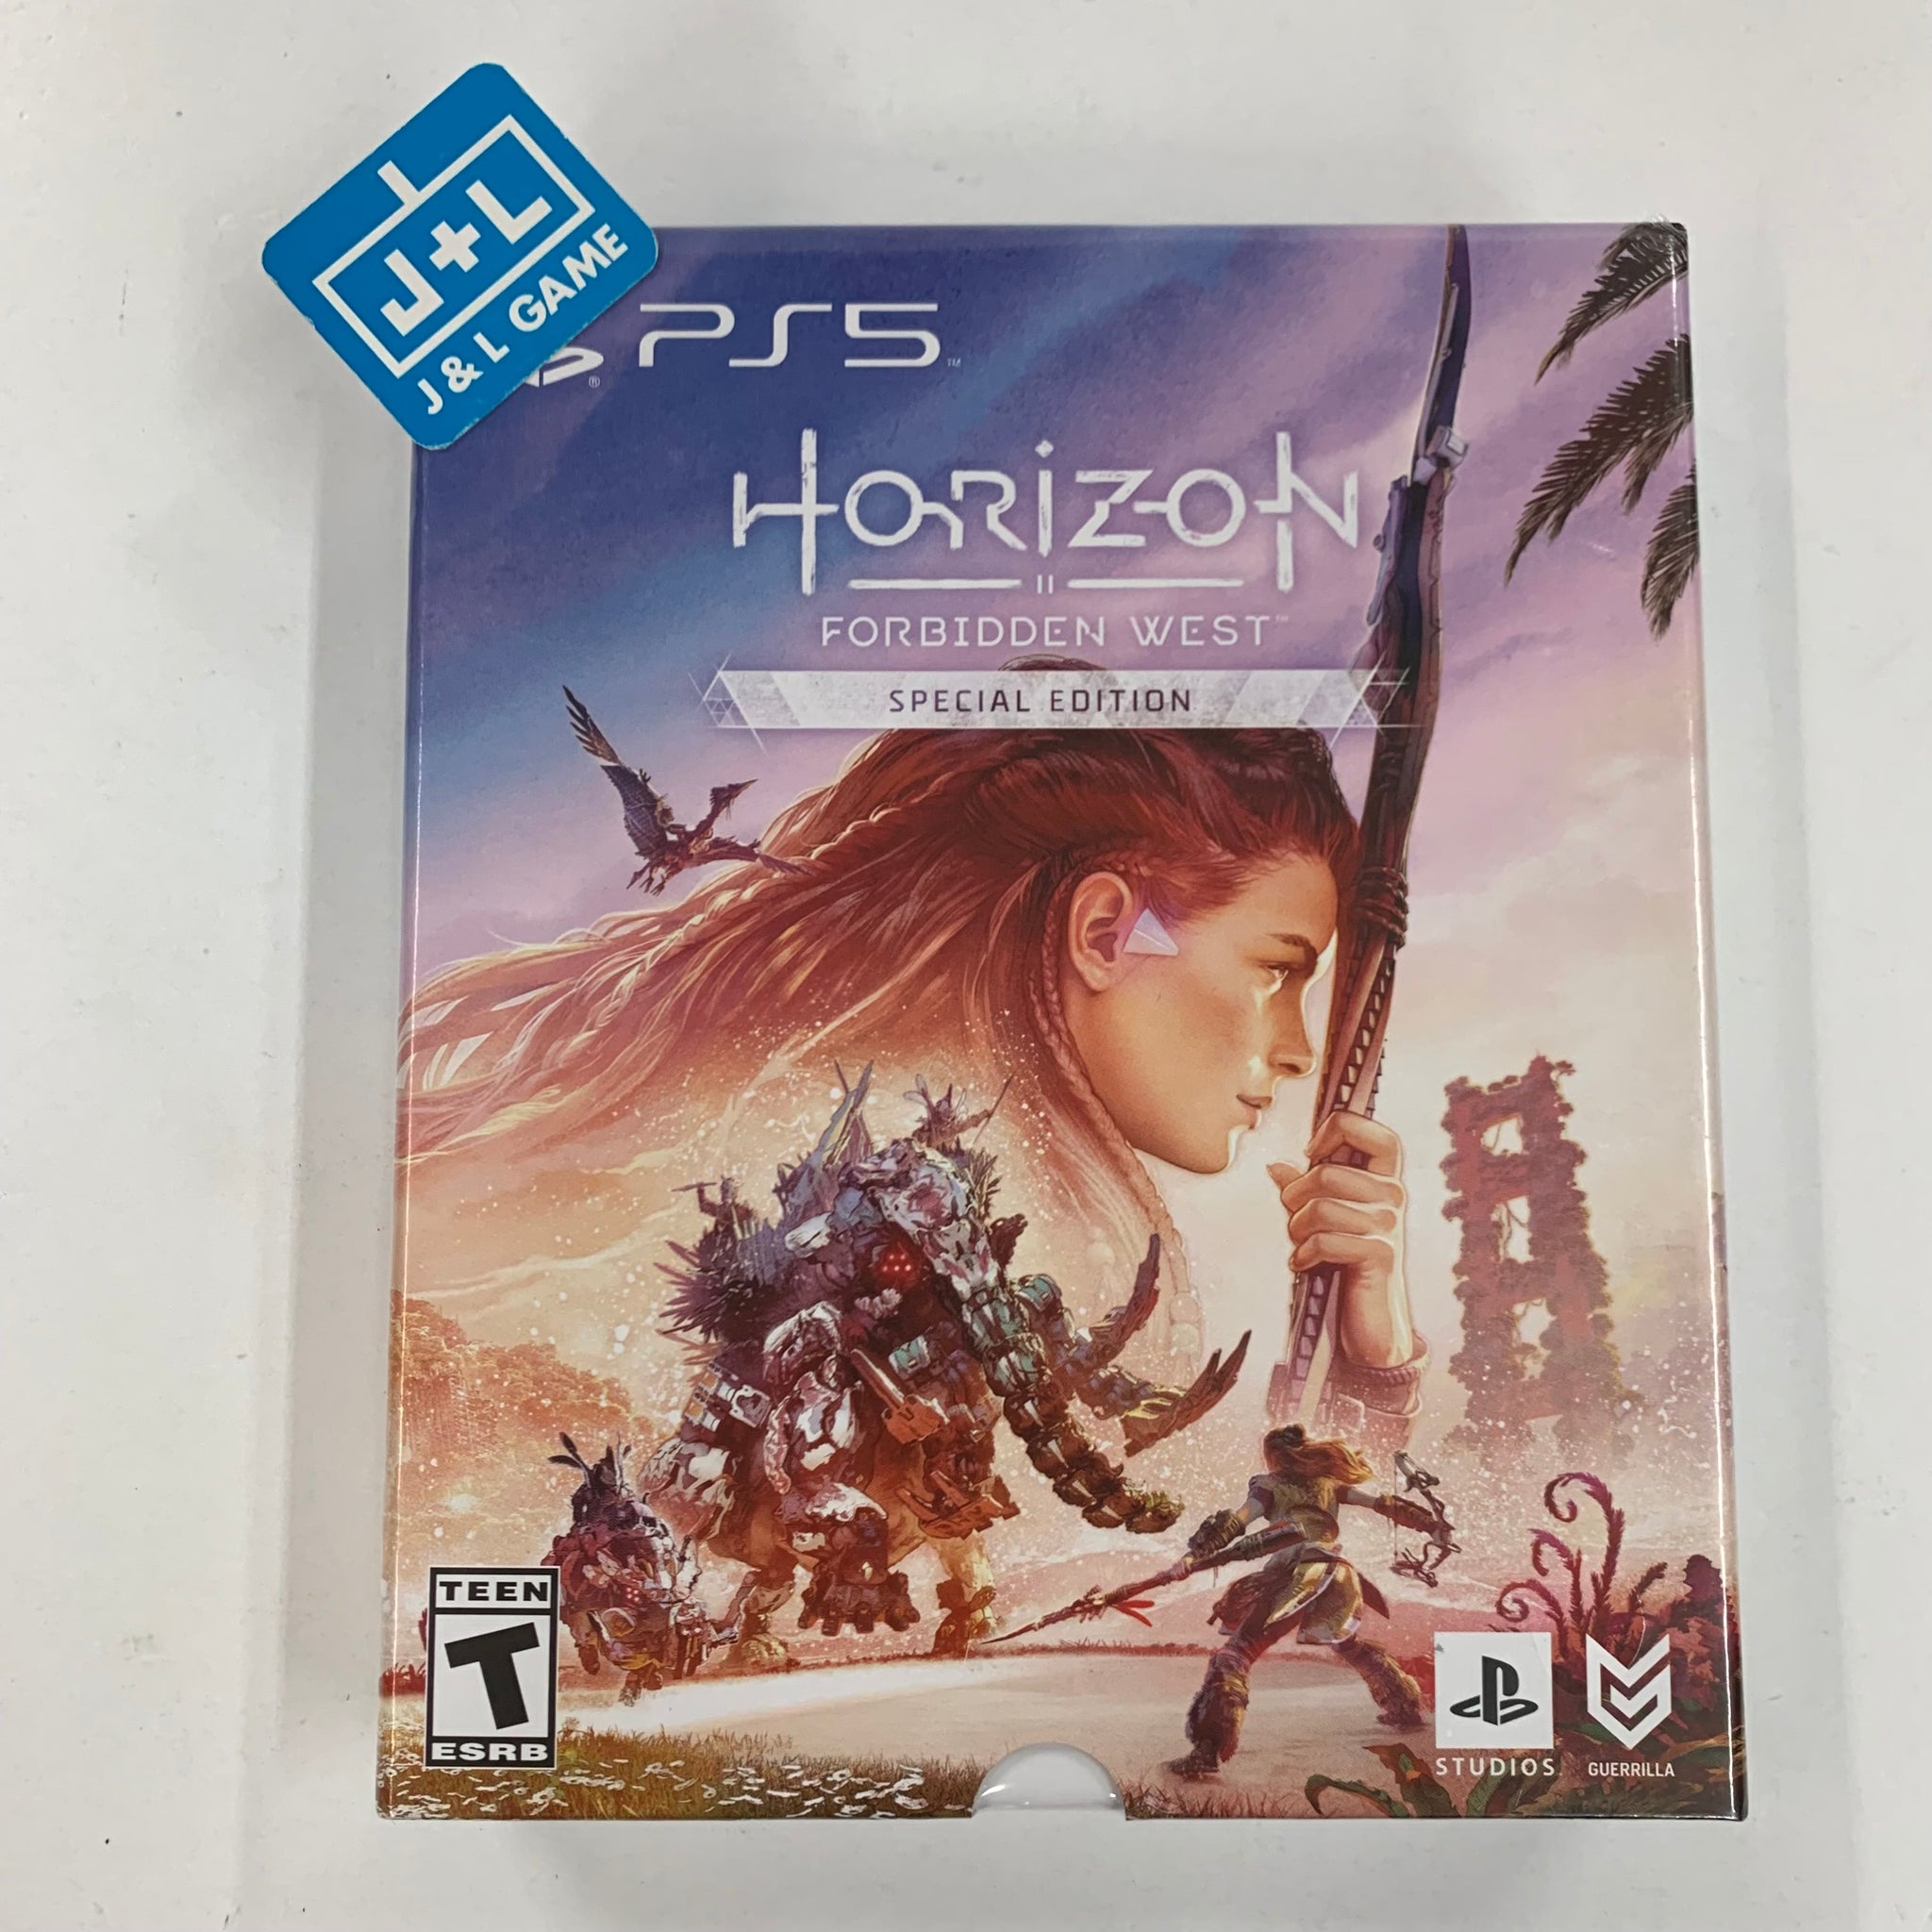  Horizon Zero Dawn: Complete Edition : Video Games